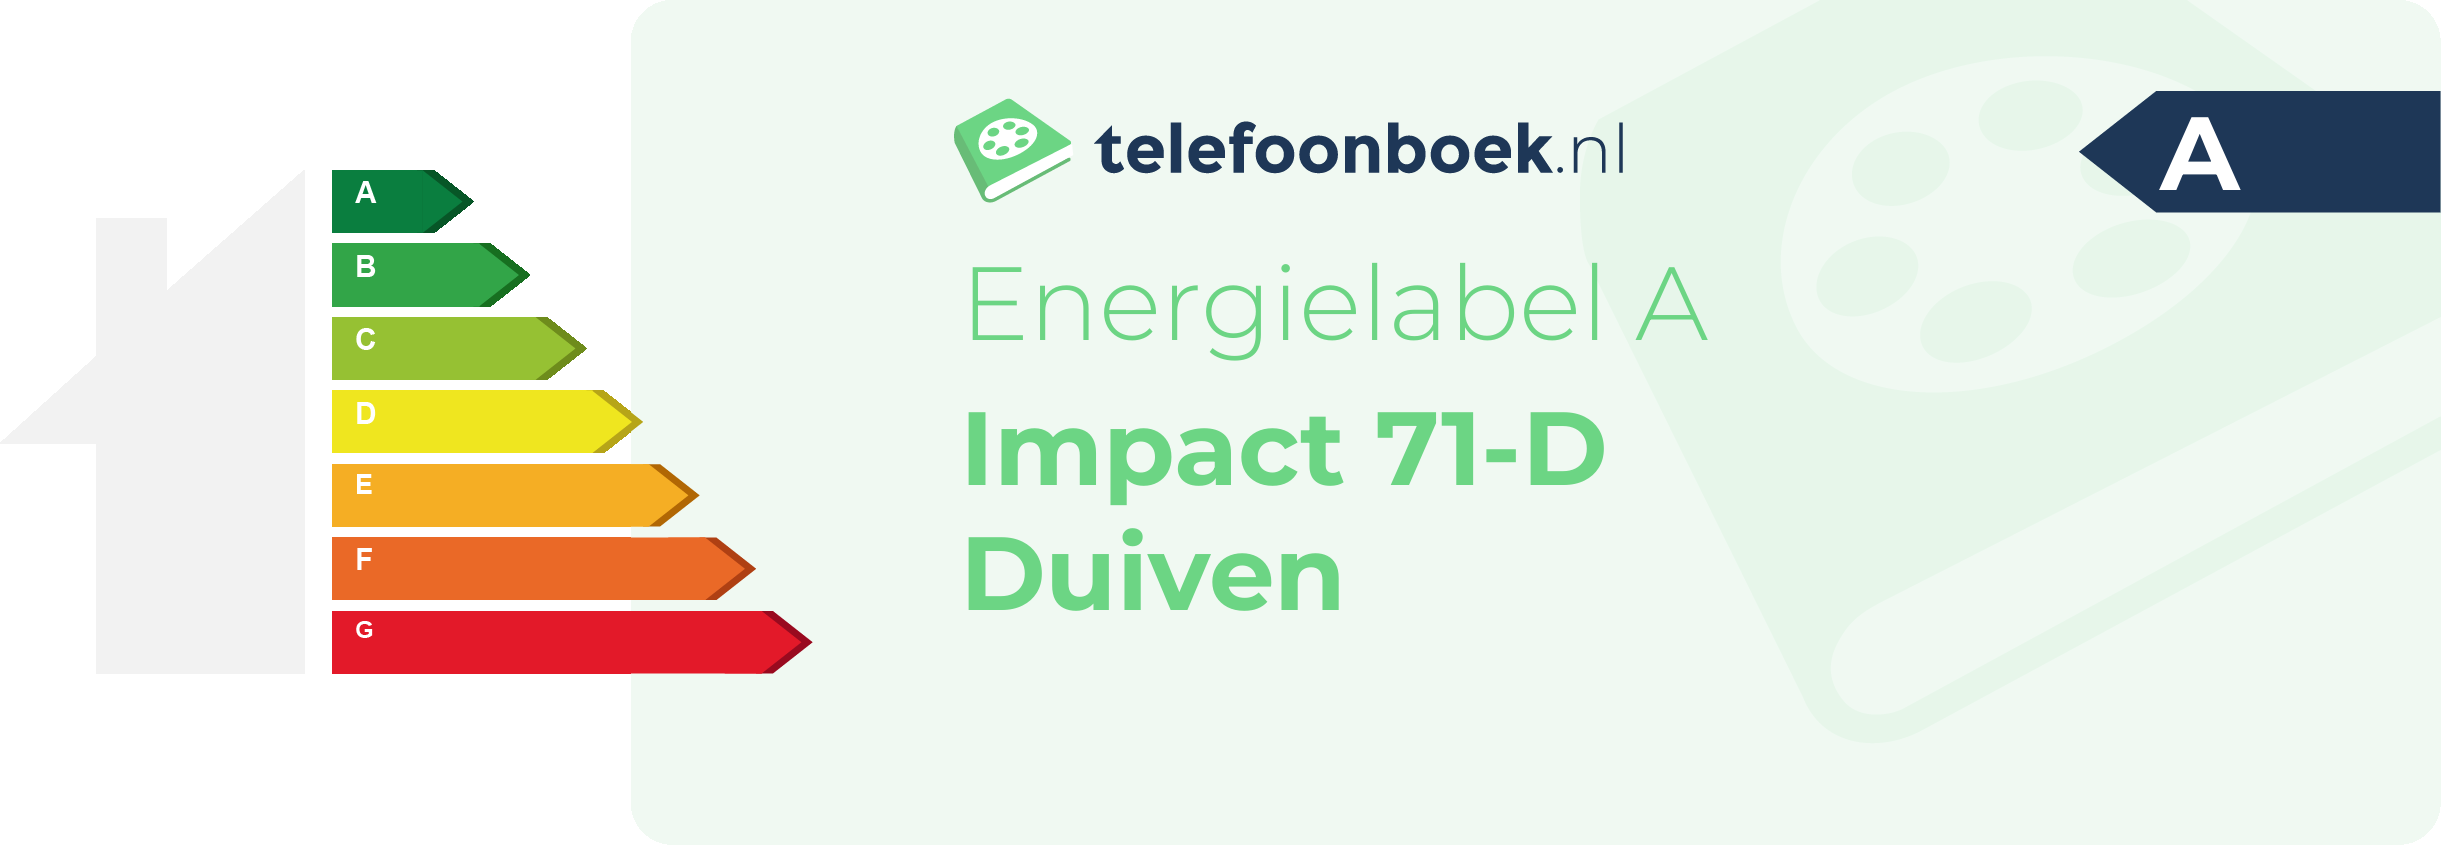 Energielabel Impact 71-D Duiven